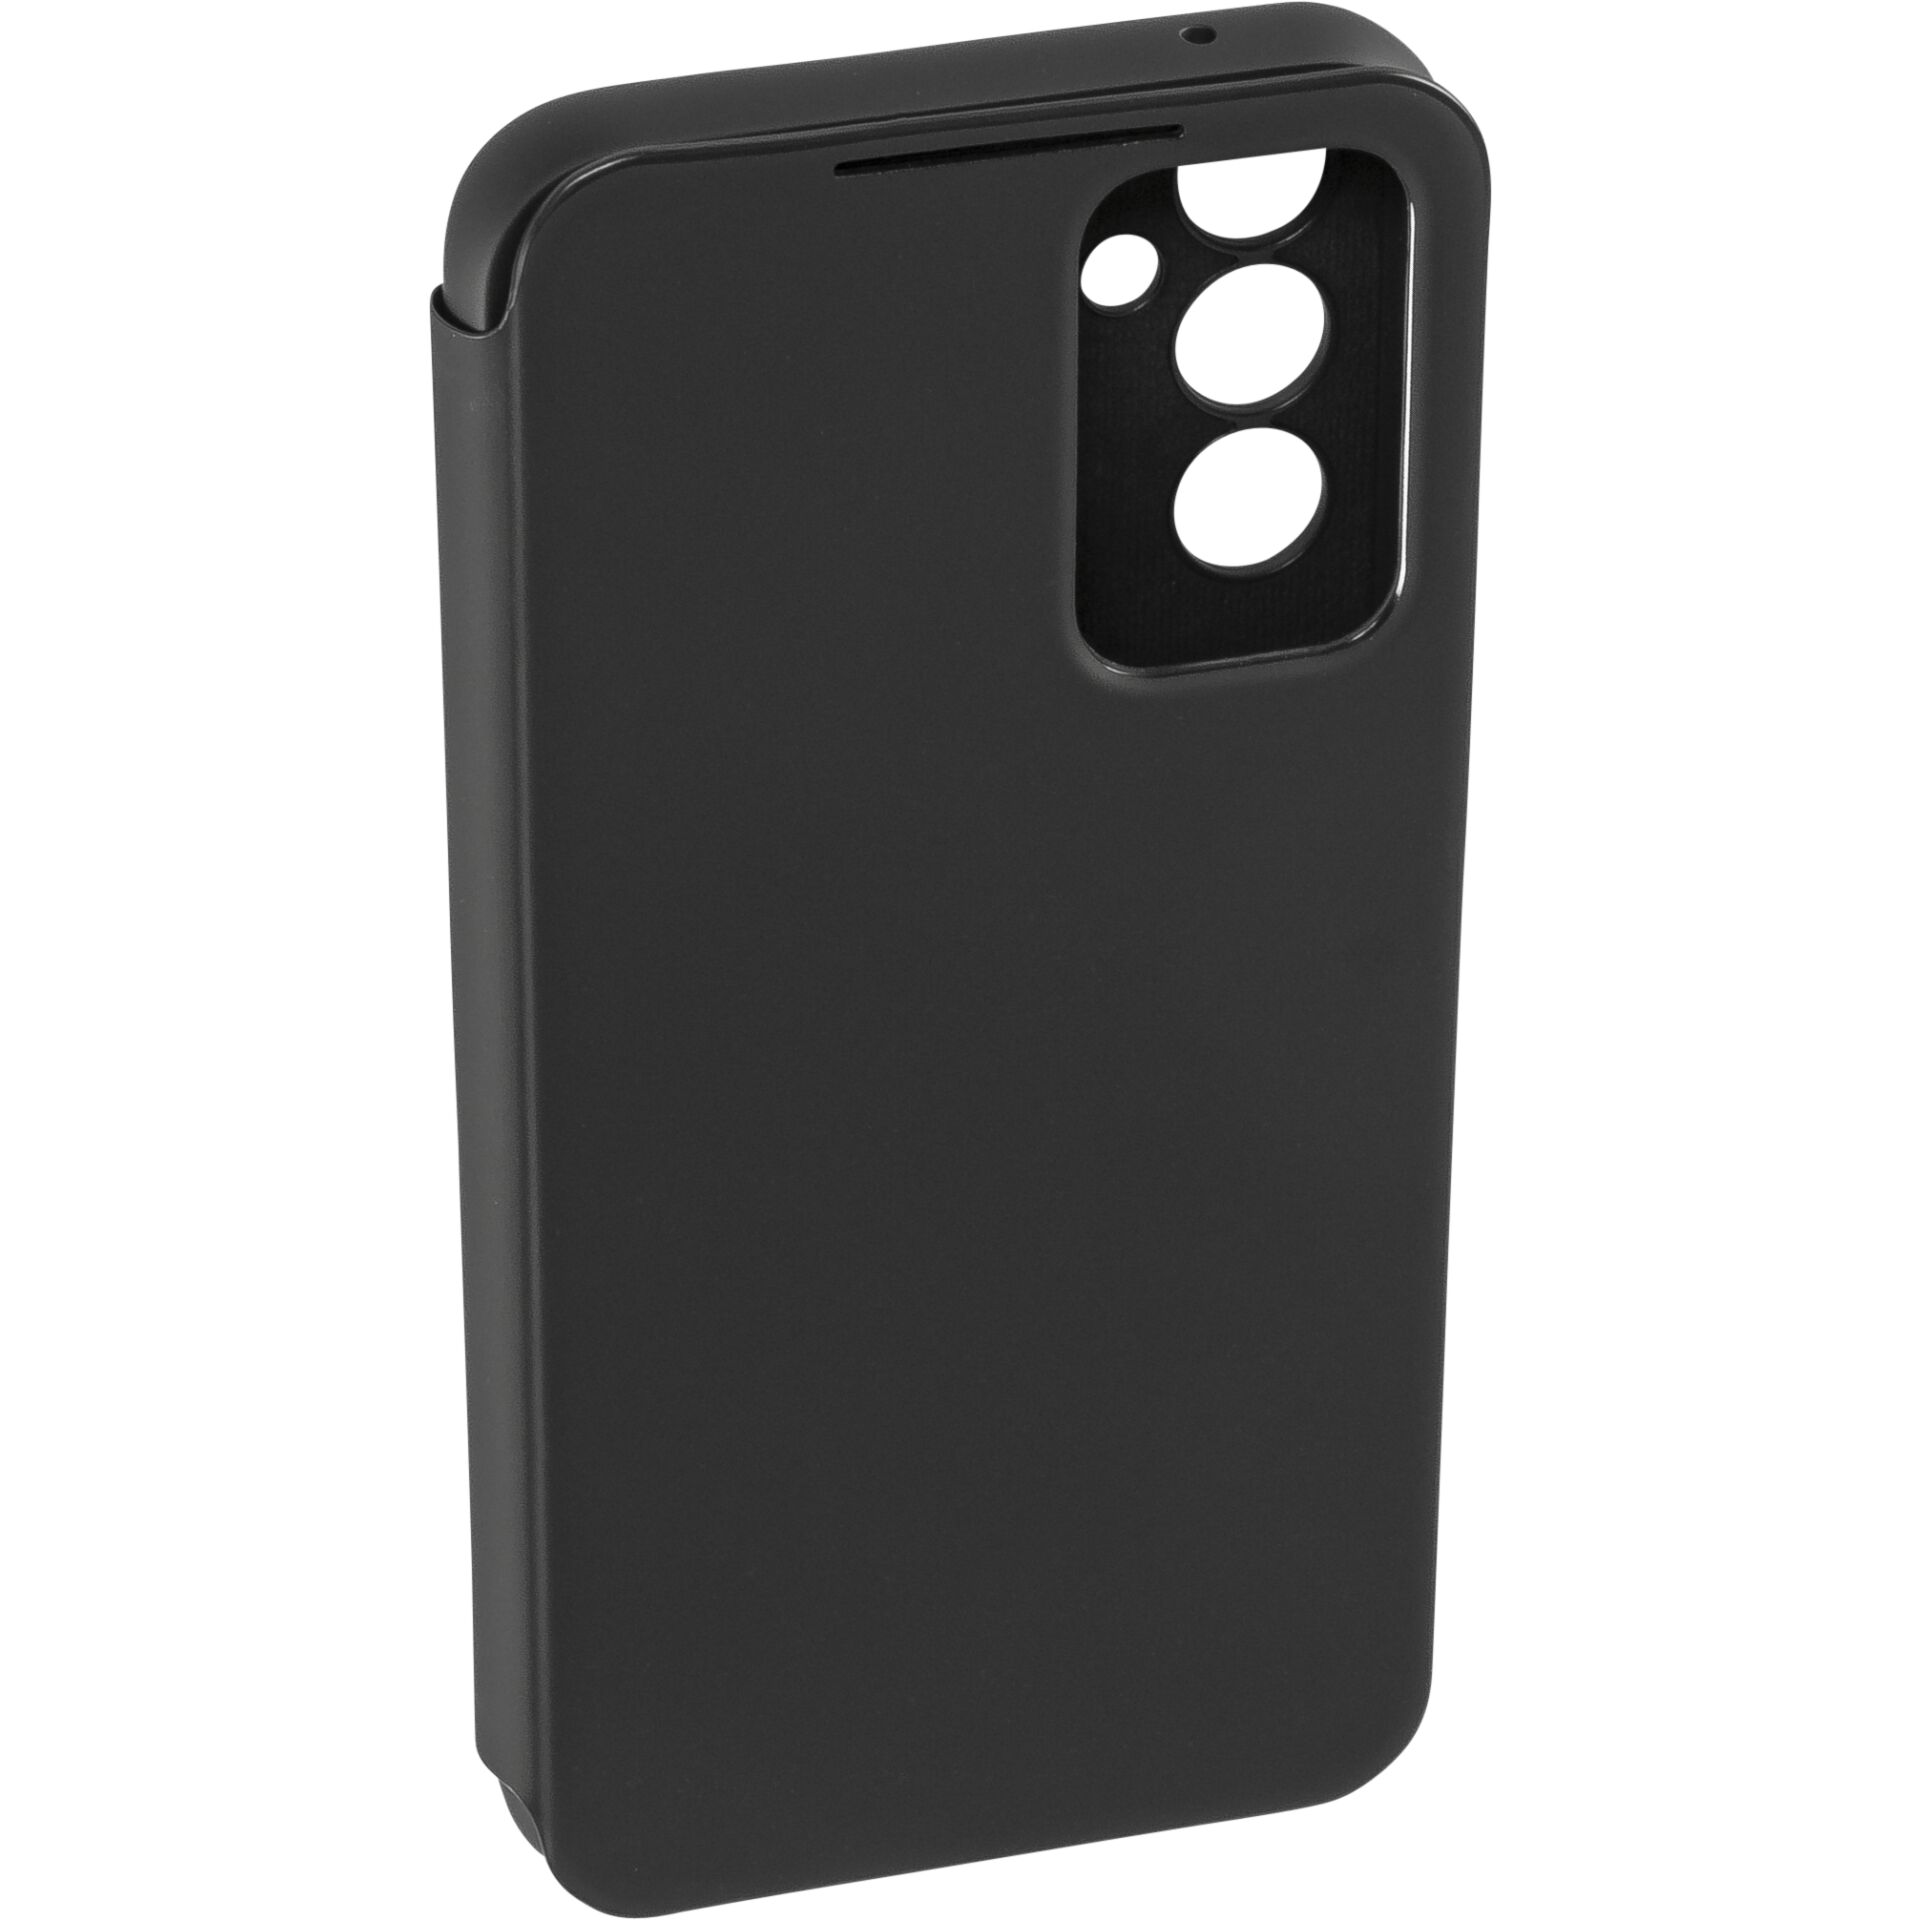 Samsung EF-ZA546 Mobile Phone Case 16.3 cm (6.4) Wallet Case Black